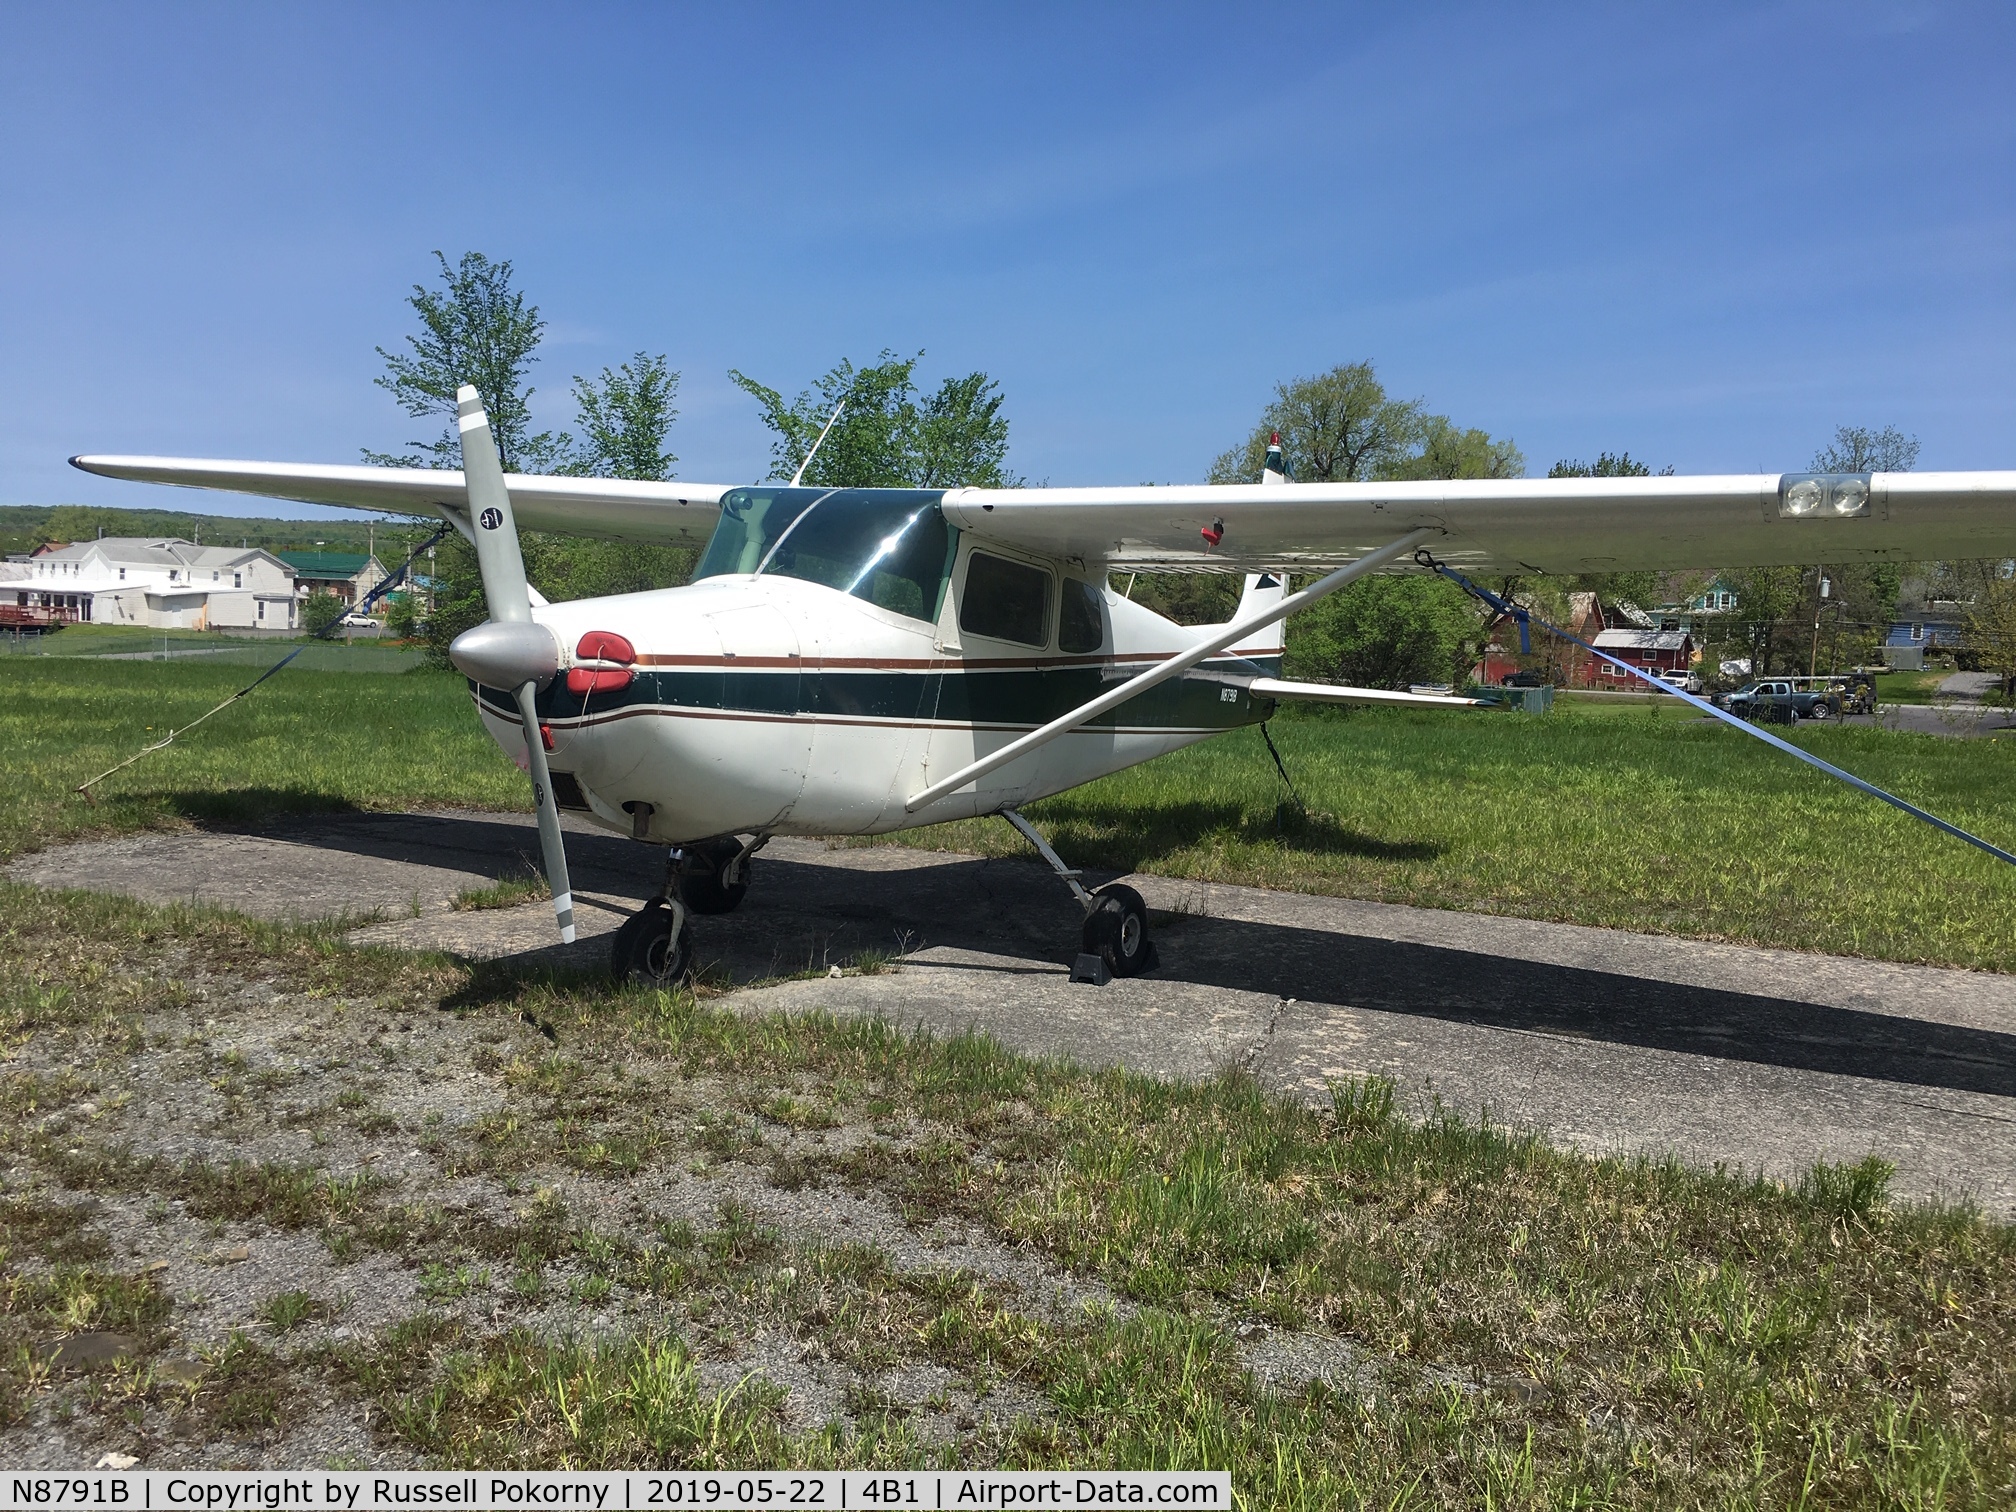 N8791B, 1957 Cessna 172 C/N 36491, Tied down at 4B1, Duanesburg, NY, Spring 2019